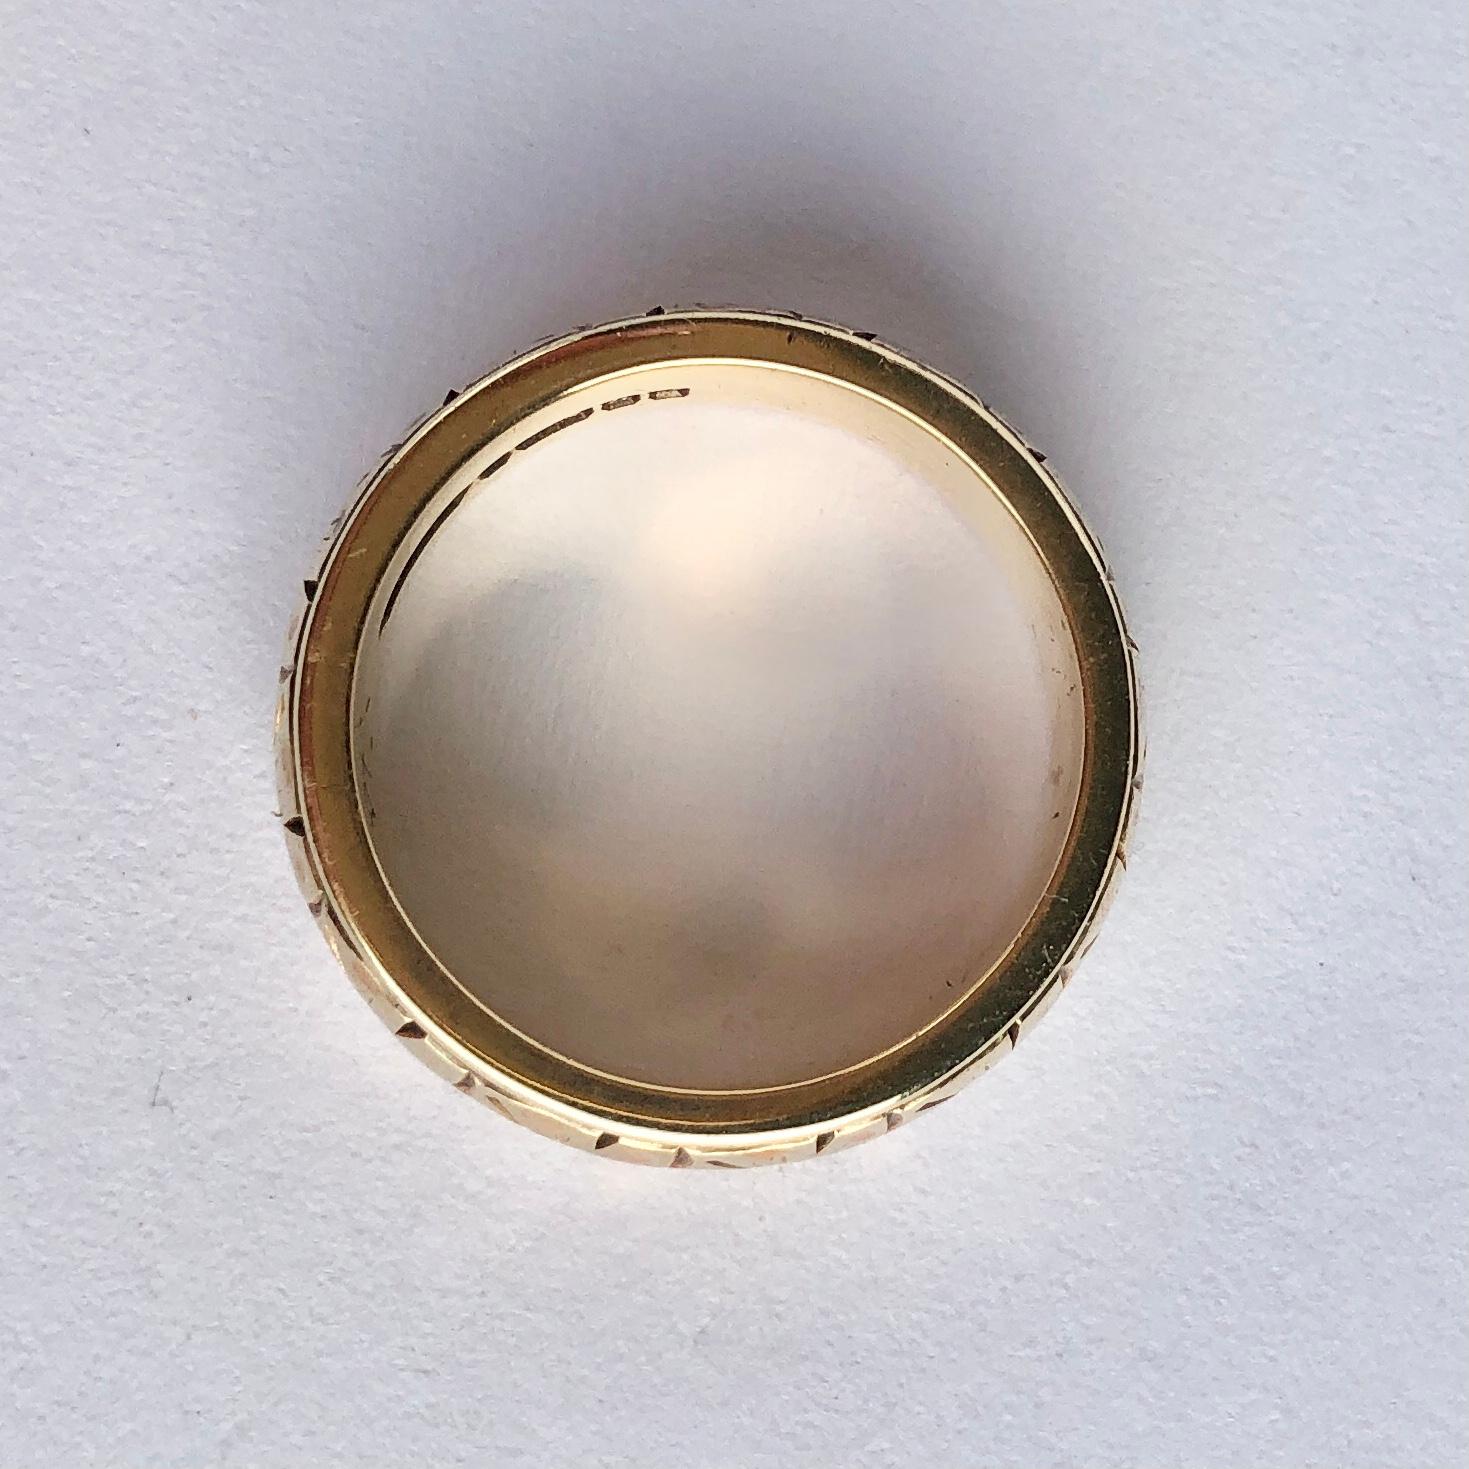 Das 9-karätige Goldband ist mit einem ausgefallenen Design in der Mitte des Bandes graviert. Hergestellt in Birmingham, England. 

Ringgröße: J 1/4 oder 5
Breite des Bandes: 6mm

Gewicht: 5,8 g